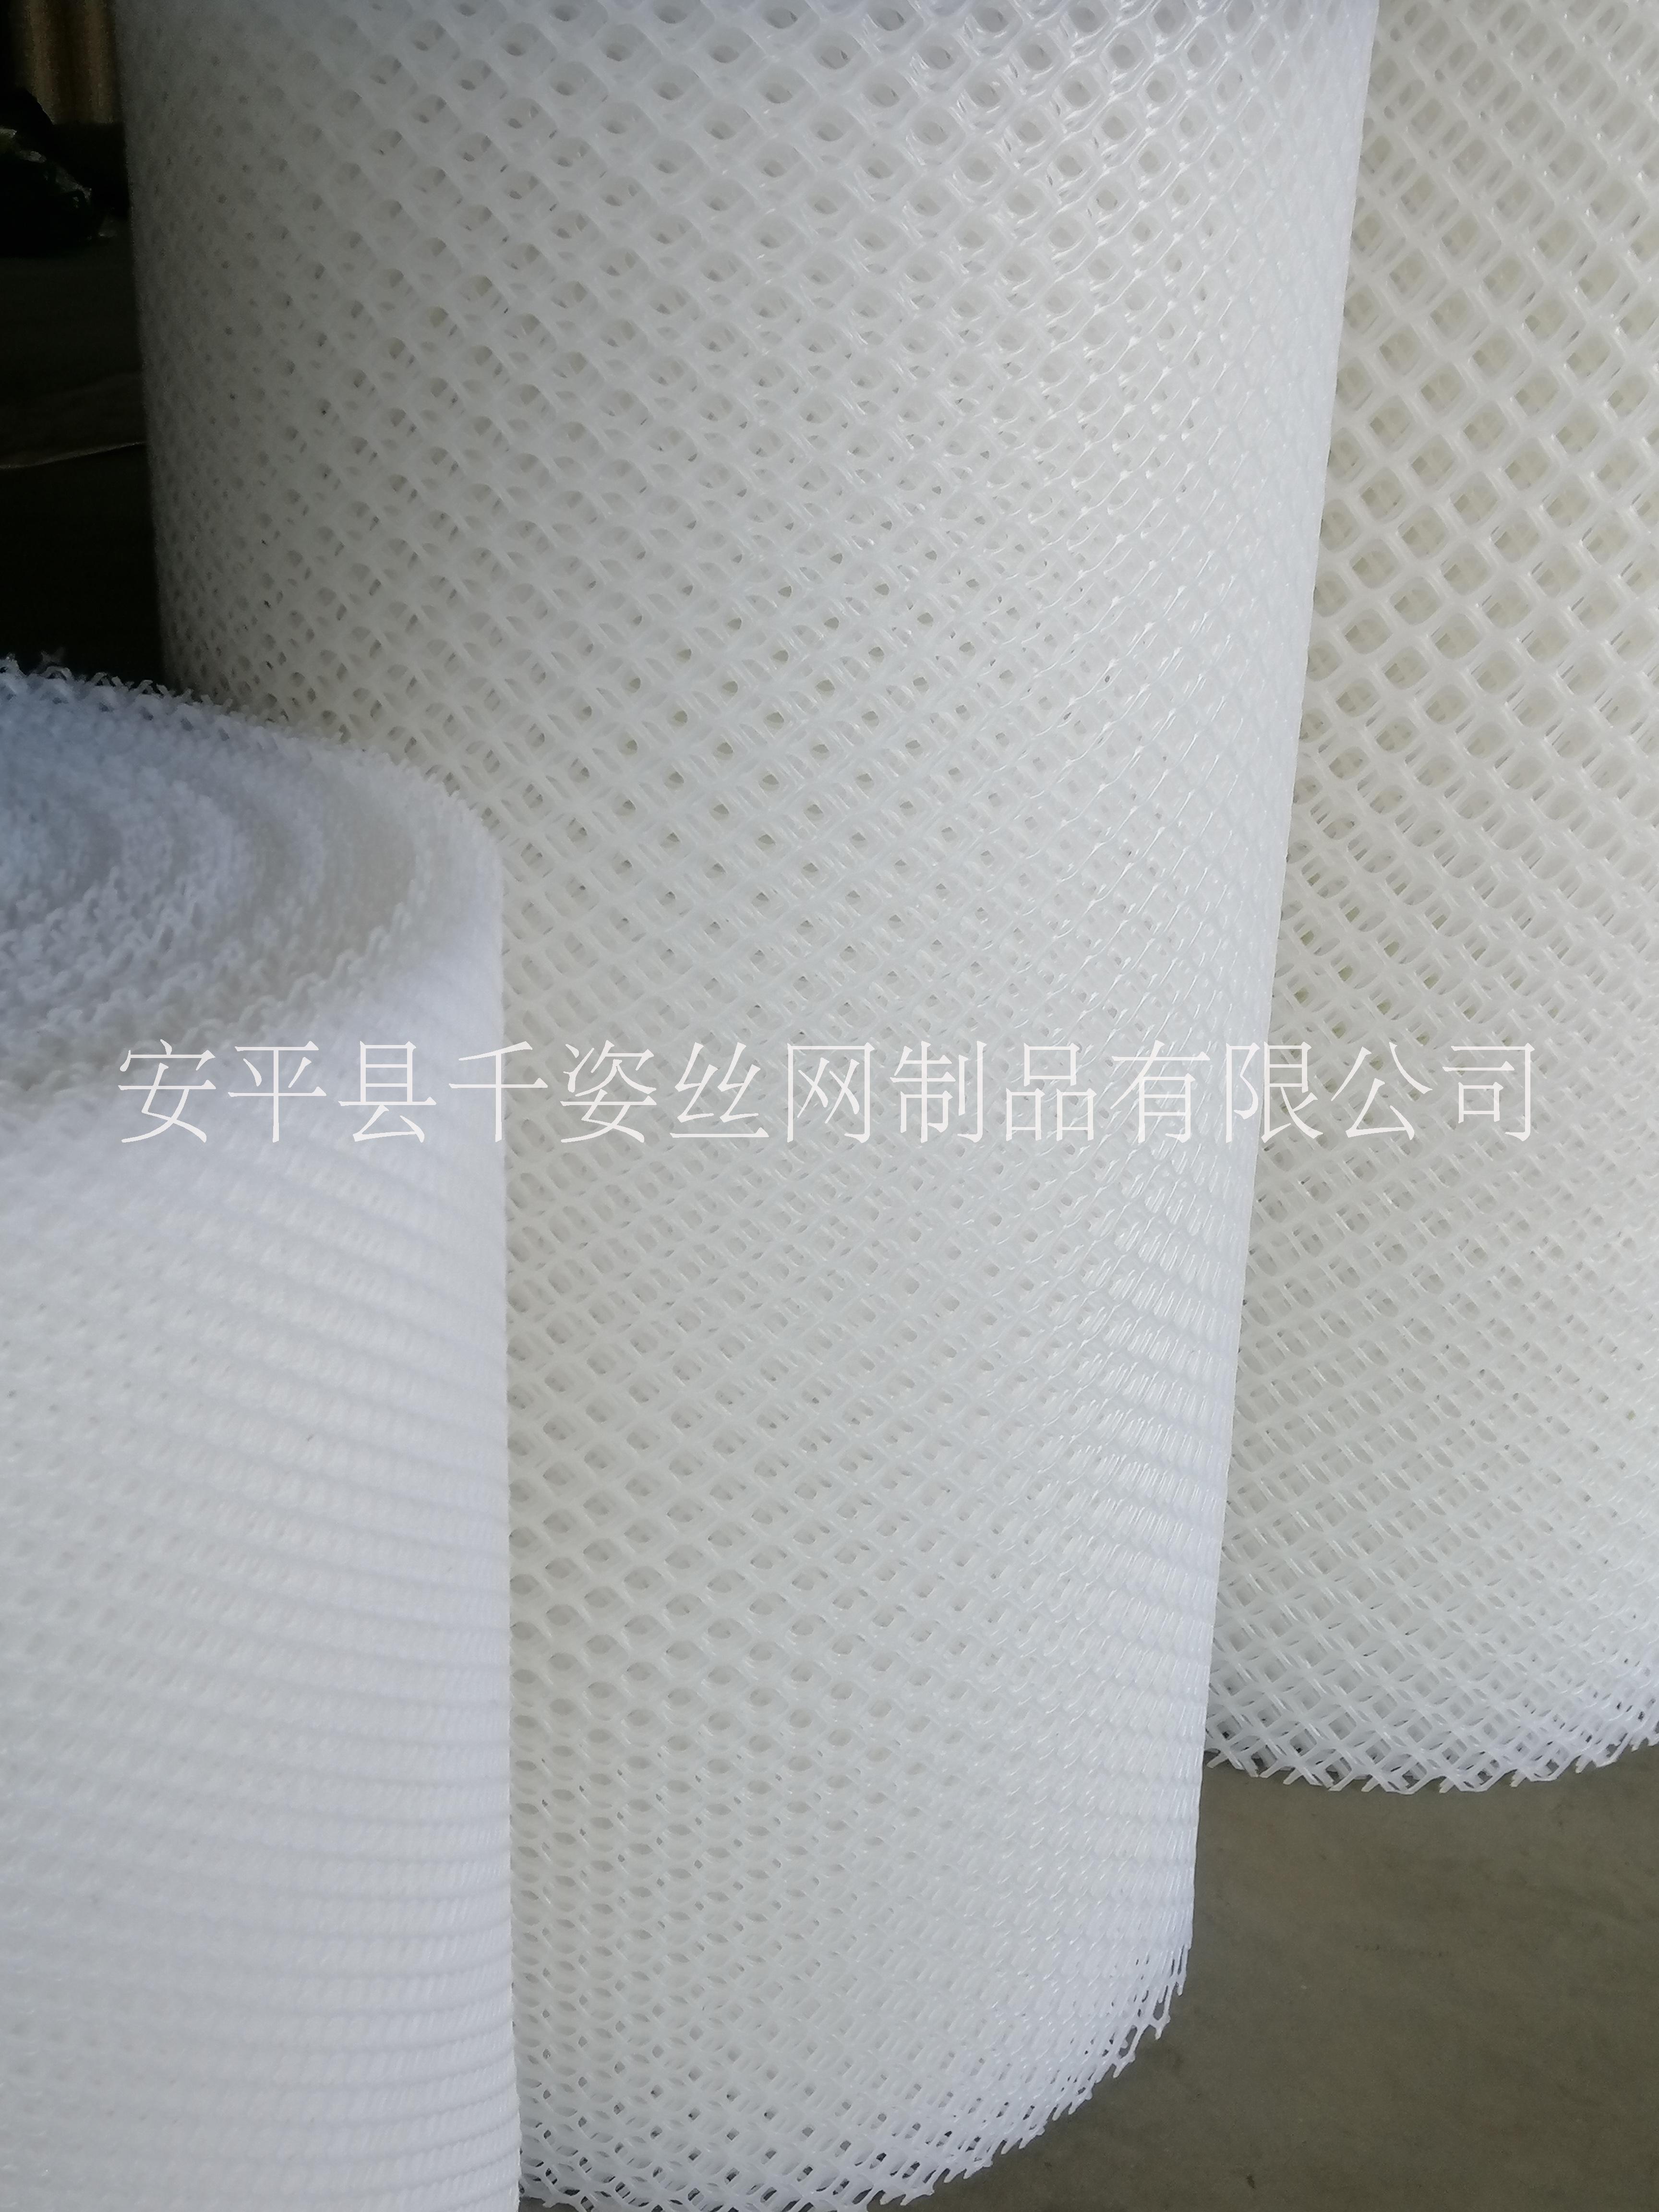 广东塑料网厂家供应价格实惠加工定做联系电话图片